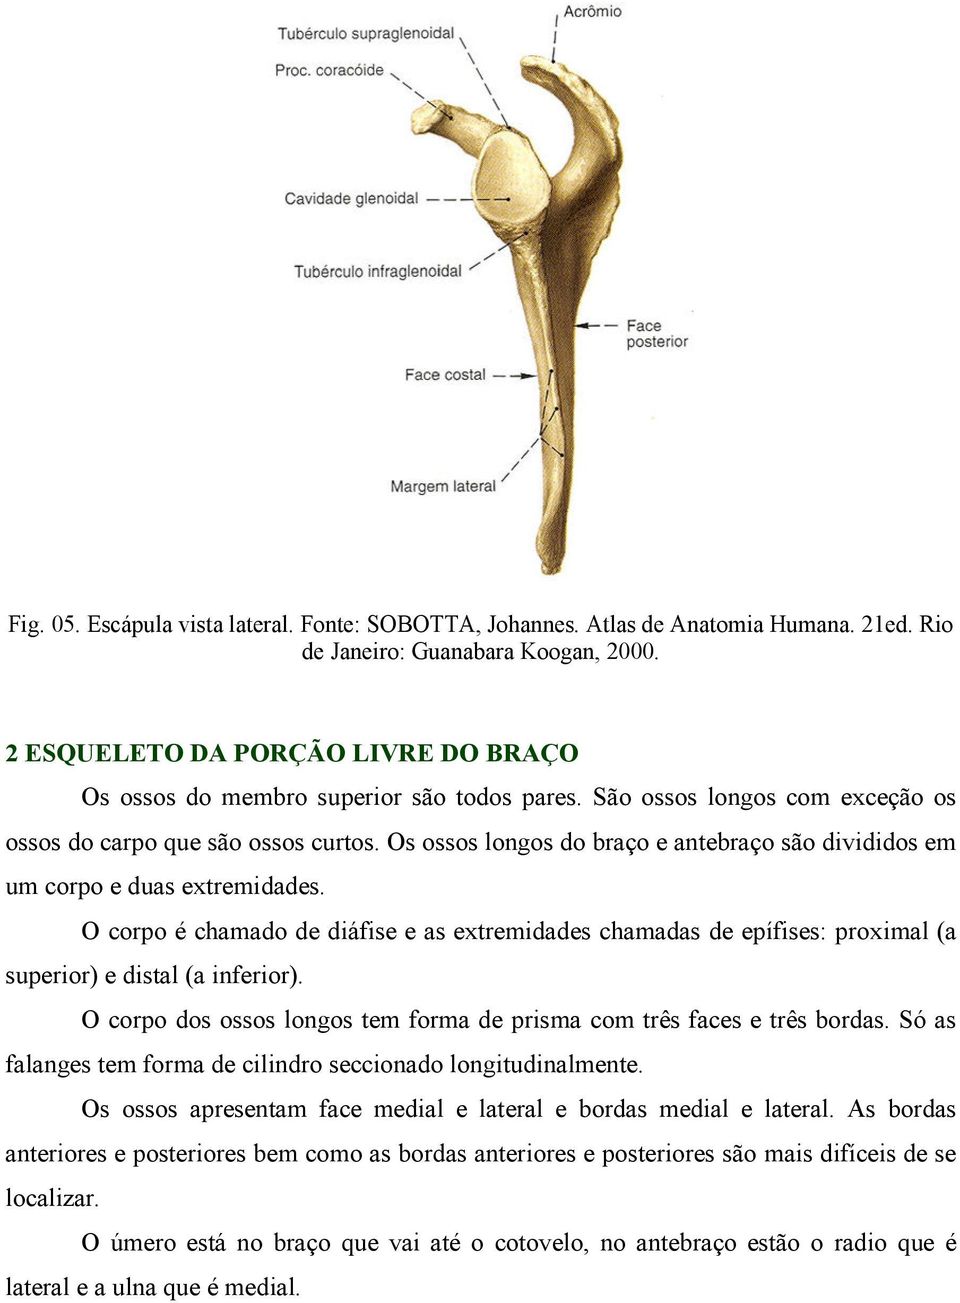 Os ossos longos do braço e antebraço são divididos em um corpo e duas extremidades. O corpo é chamado de diáfise e as extremidades chamadas de epífises: proximal (a superior) e distal (a inferior).